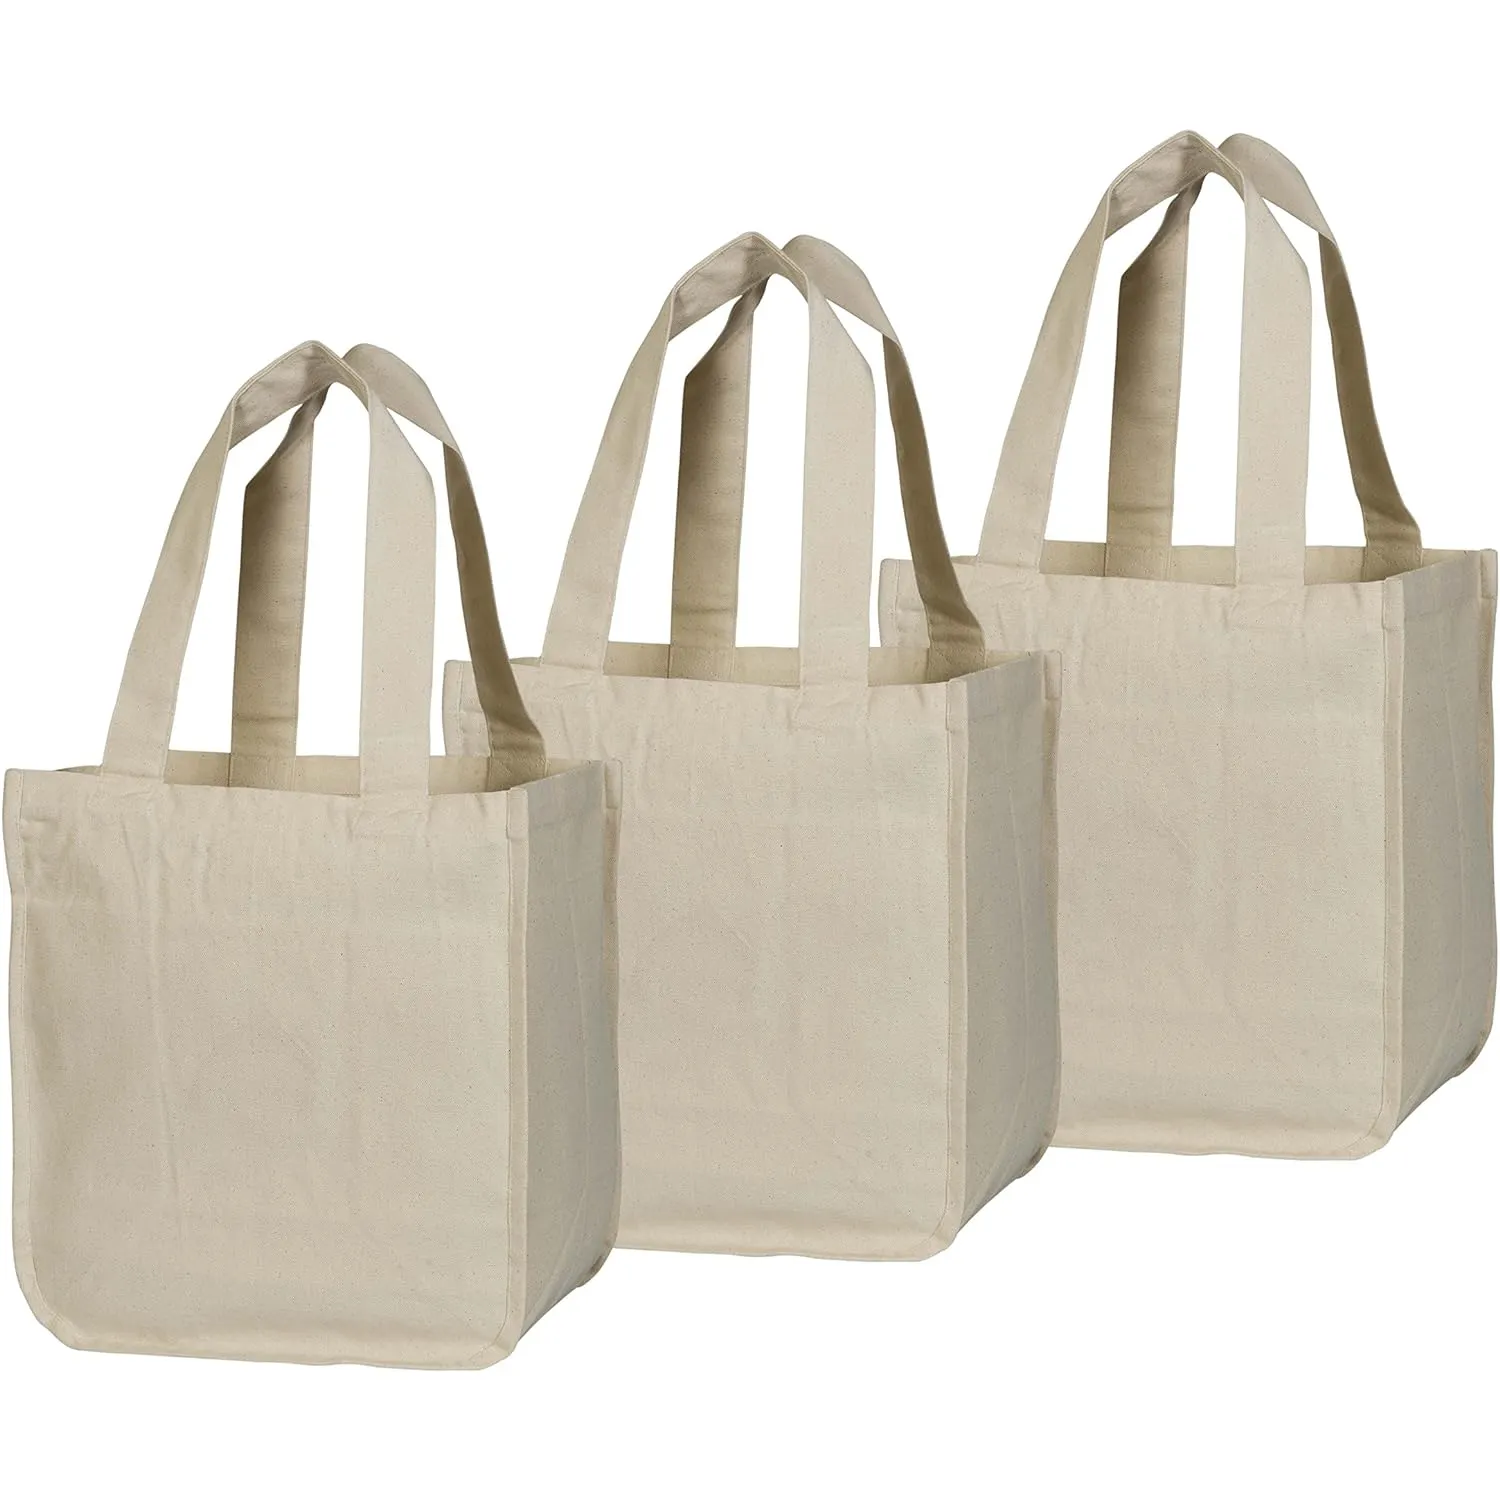 अतिरिक्त भारी वजन वाले बड़े आकार के कार्बनिक कपास धोने योग्य और पर्यावरण के अनुकूल कपड़े कैनवास किराने की खरीदारी टोटे बैग